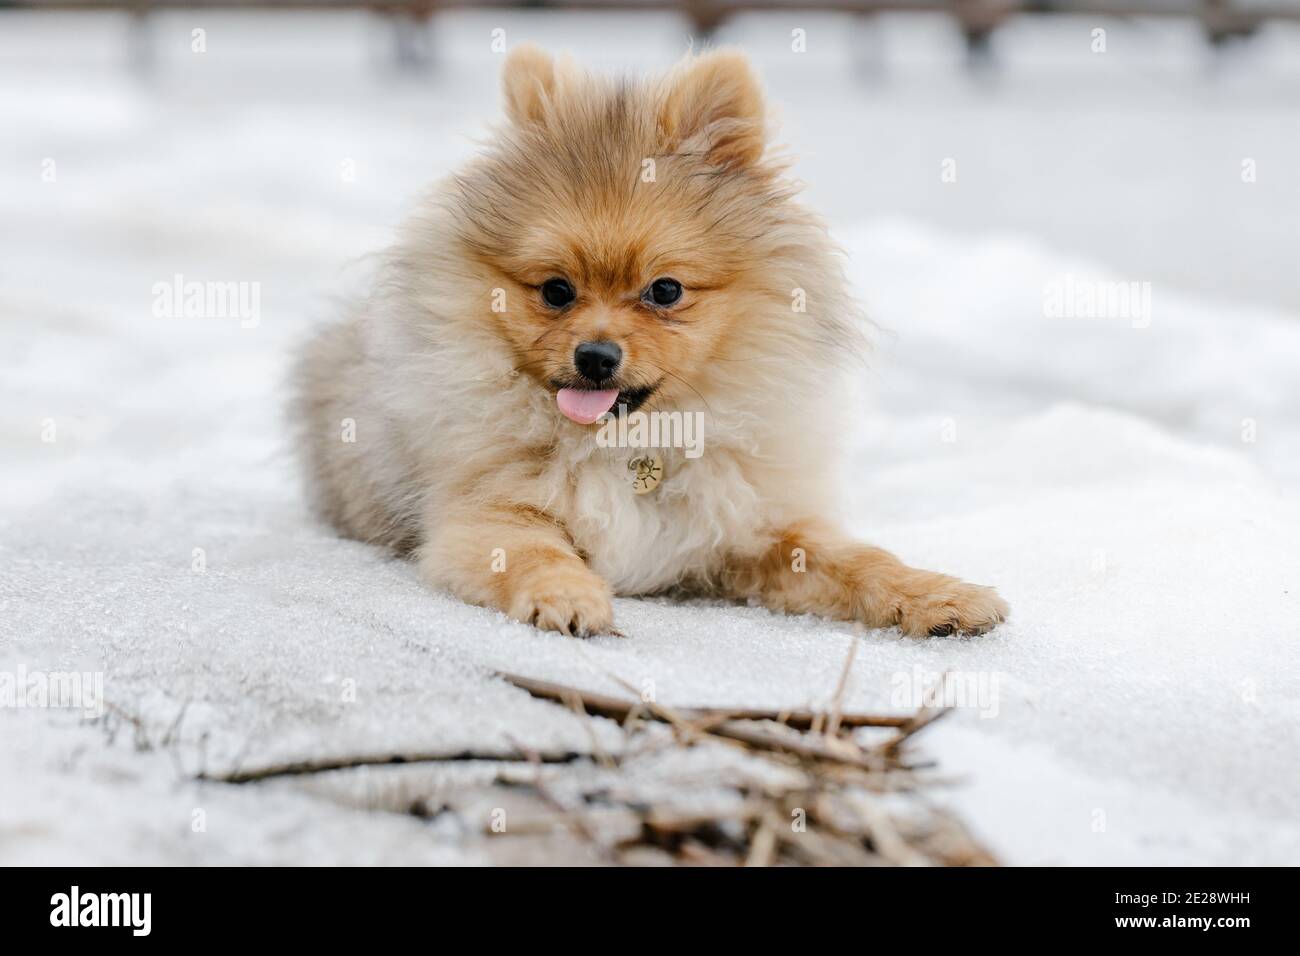 Le chien rouge de Poméranie se reproduit à l'extérieur en hiver. Mignon chien spitz de Pomeranian dans la neige. Portrait d'un animal sur fond de neige. Banque D'Images